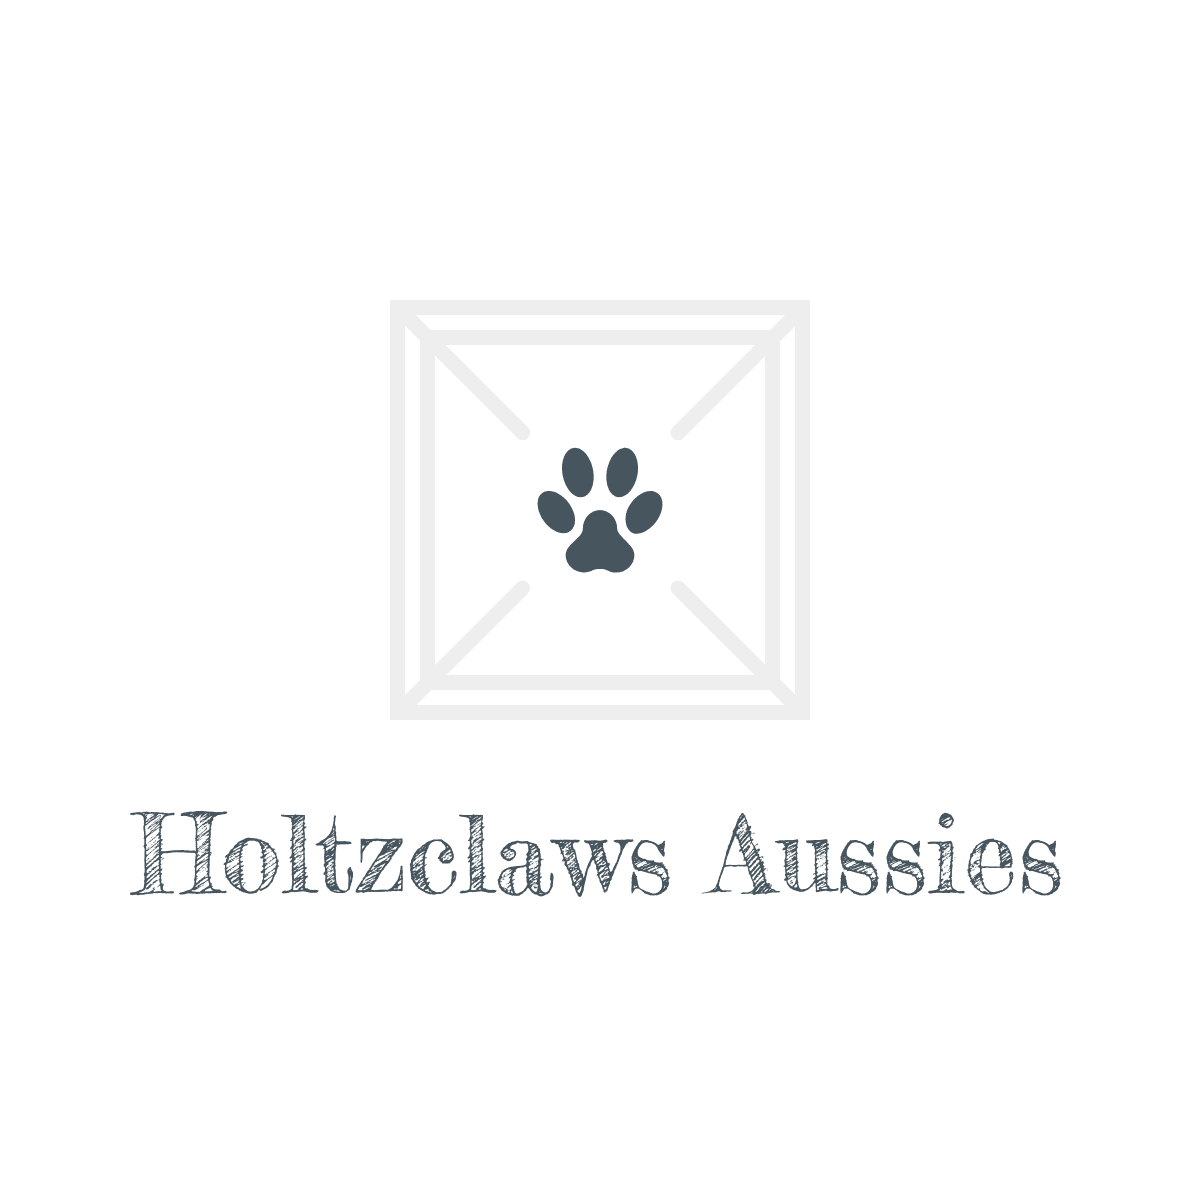 Holtzclaws Aussies logo